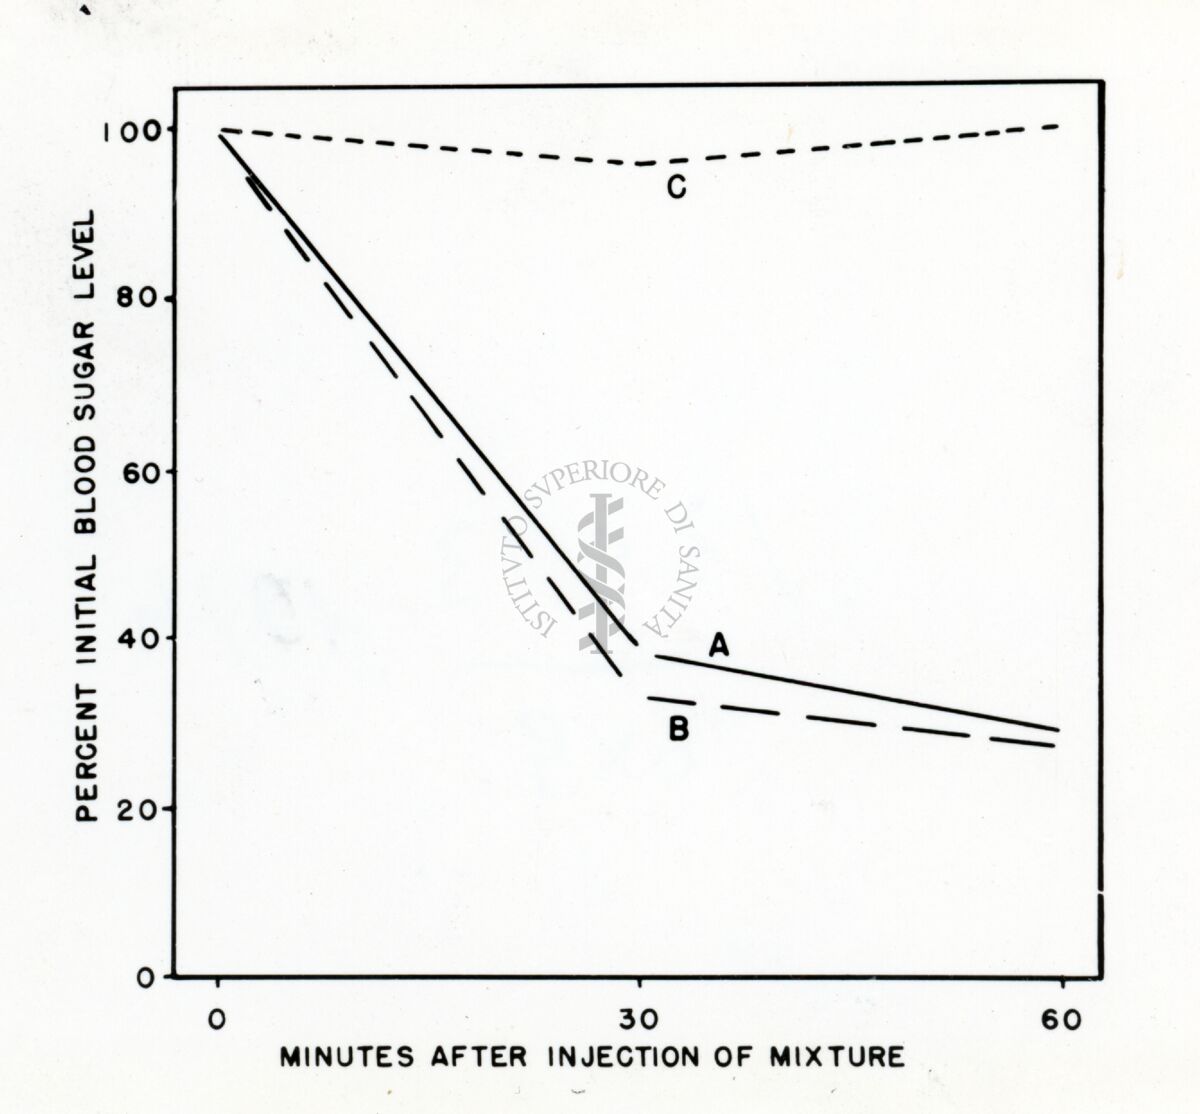 Grafico in cui sull'asse delle ordinate è riportata la percentuale iniziale del livello di zucchero nel sangue, sull'asse delle ascisse 30 e 60 minuti dopo l'iniezione di composto